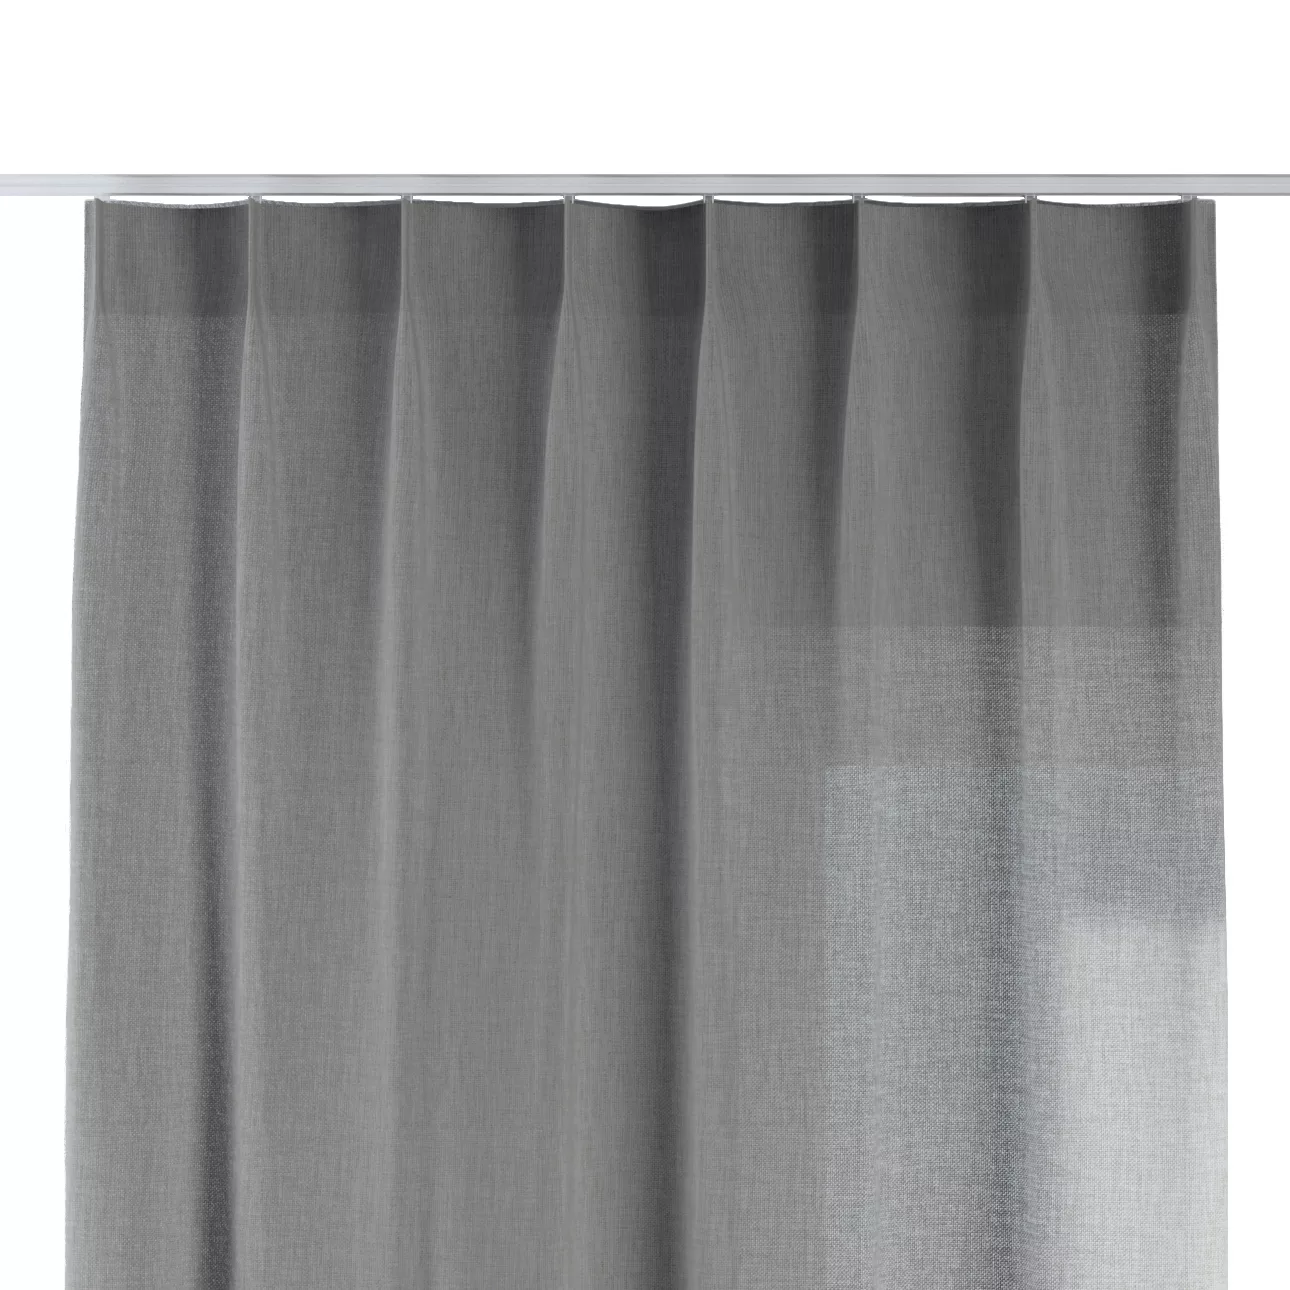 Vorhang mit flämischen 1-er Falten, grau, Sensual Premium (144-55) günstig online kaufen